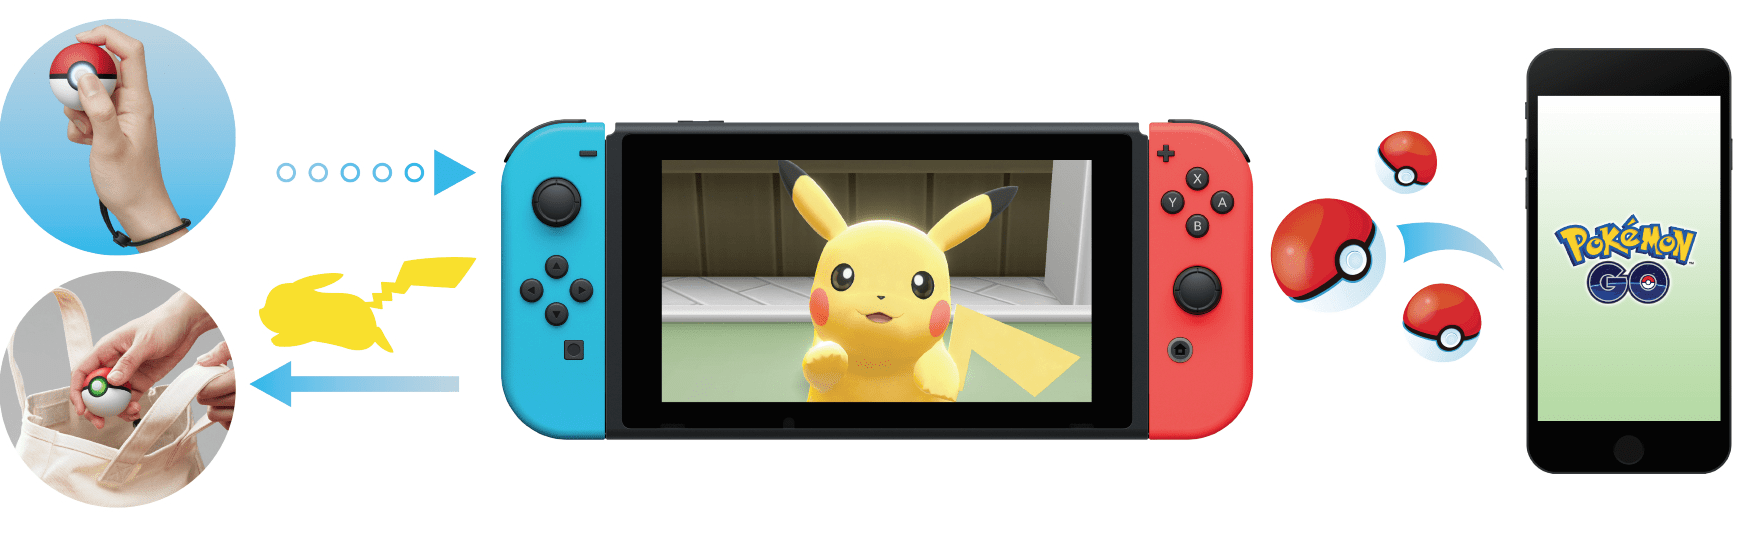 RÃ©sultat de recherche d'images pour "pokemon let's go pack"